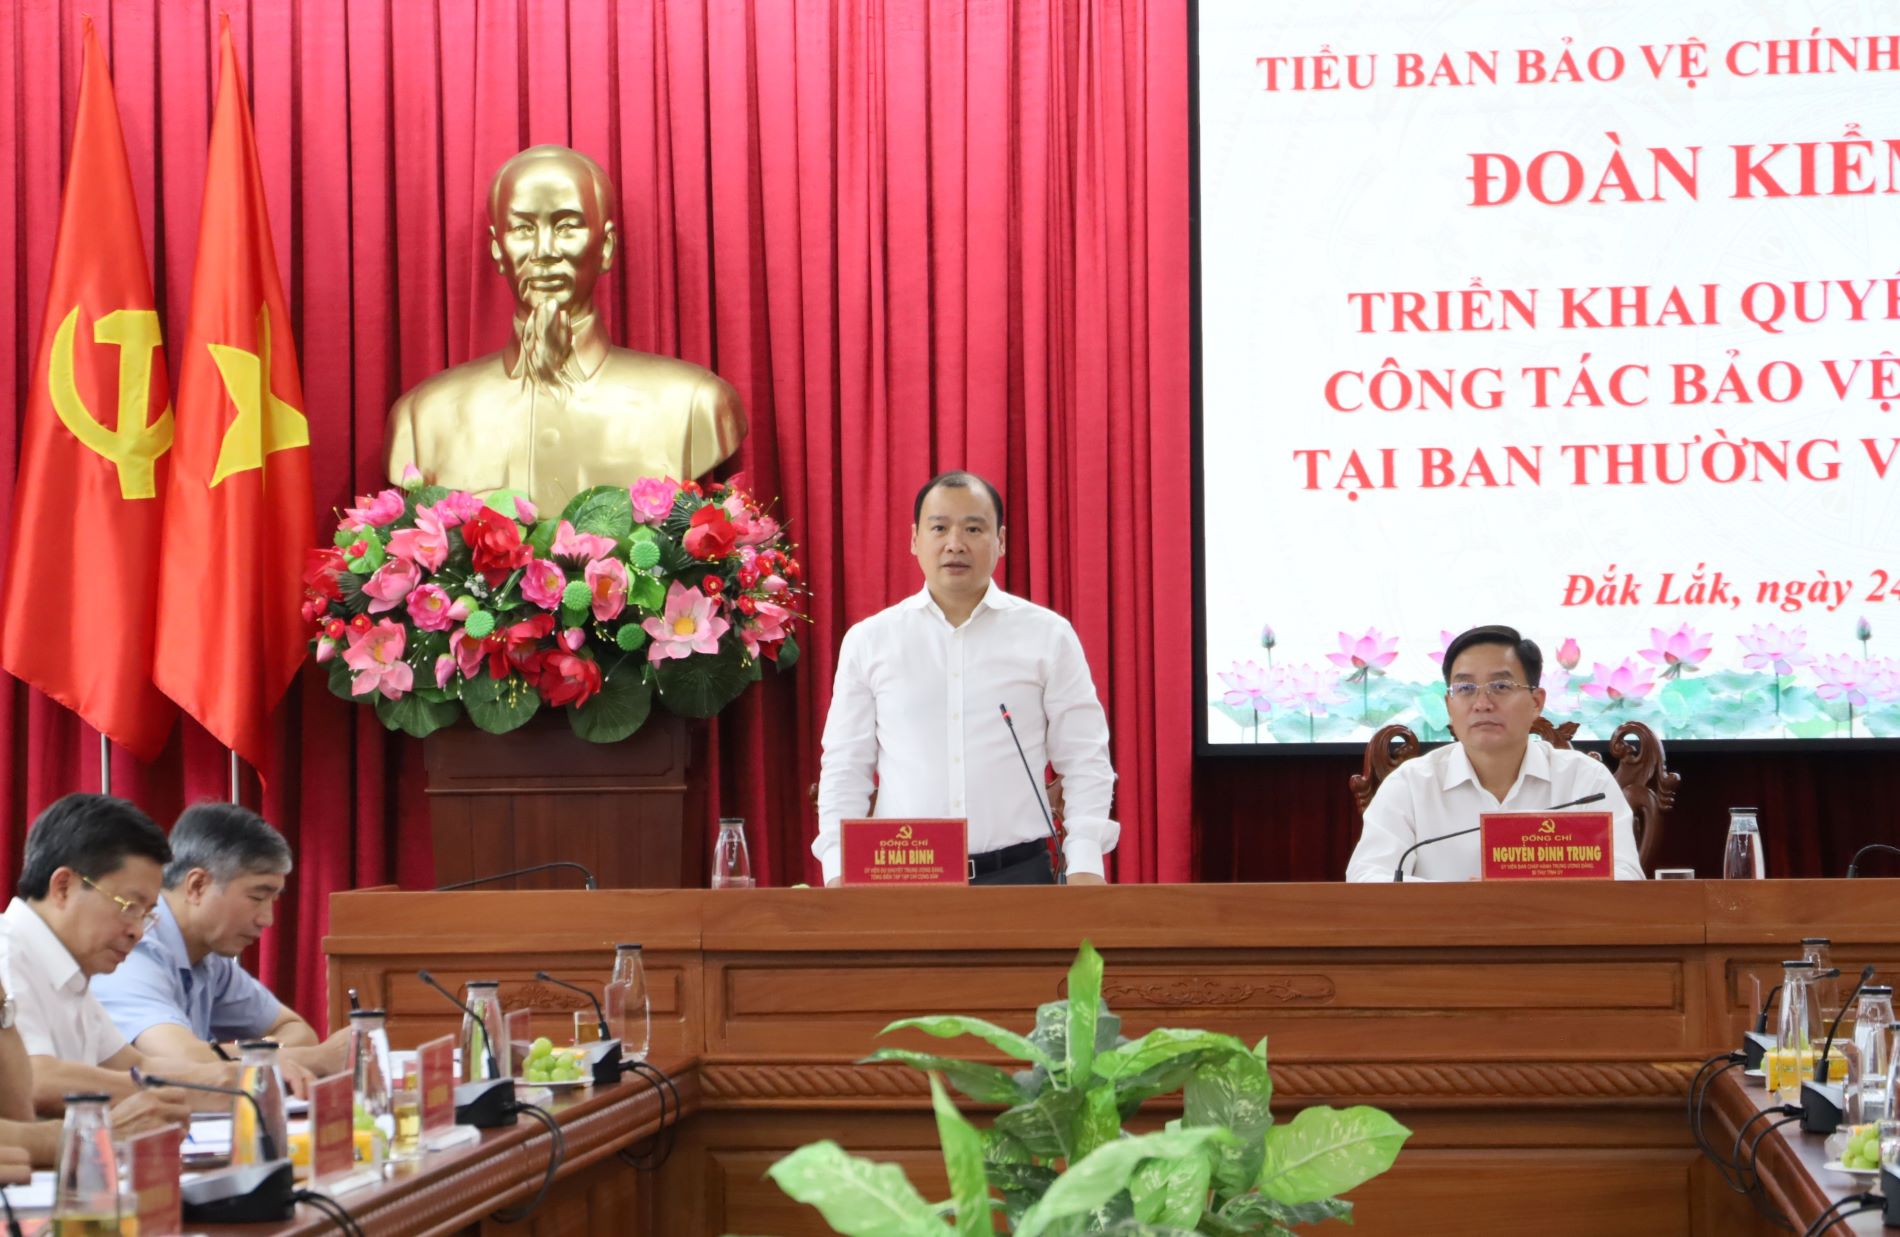 Đoàn kiểm tra Tiểu ban Bảo vệ chính trị nội bộ Trung ương triển khai kế hoạch kiểm tra tại tỉnh Đắk Lắk